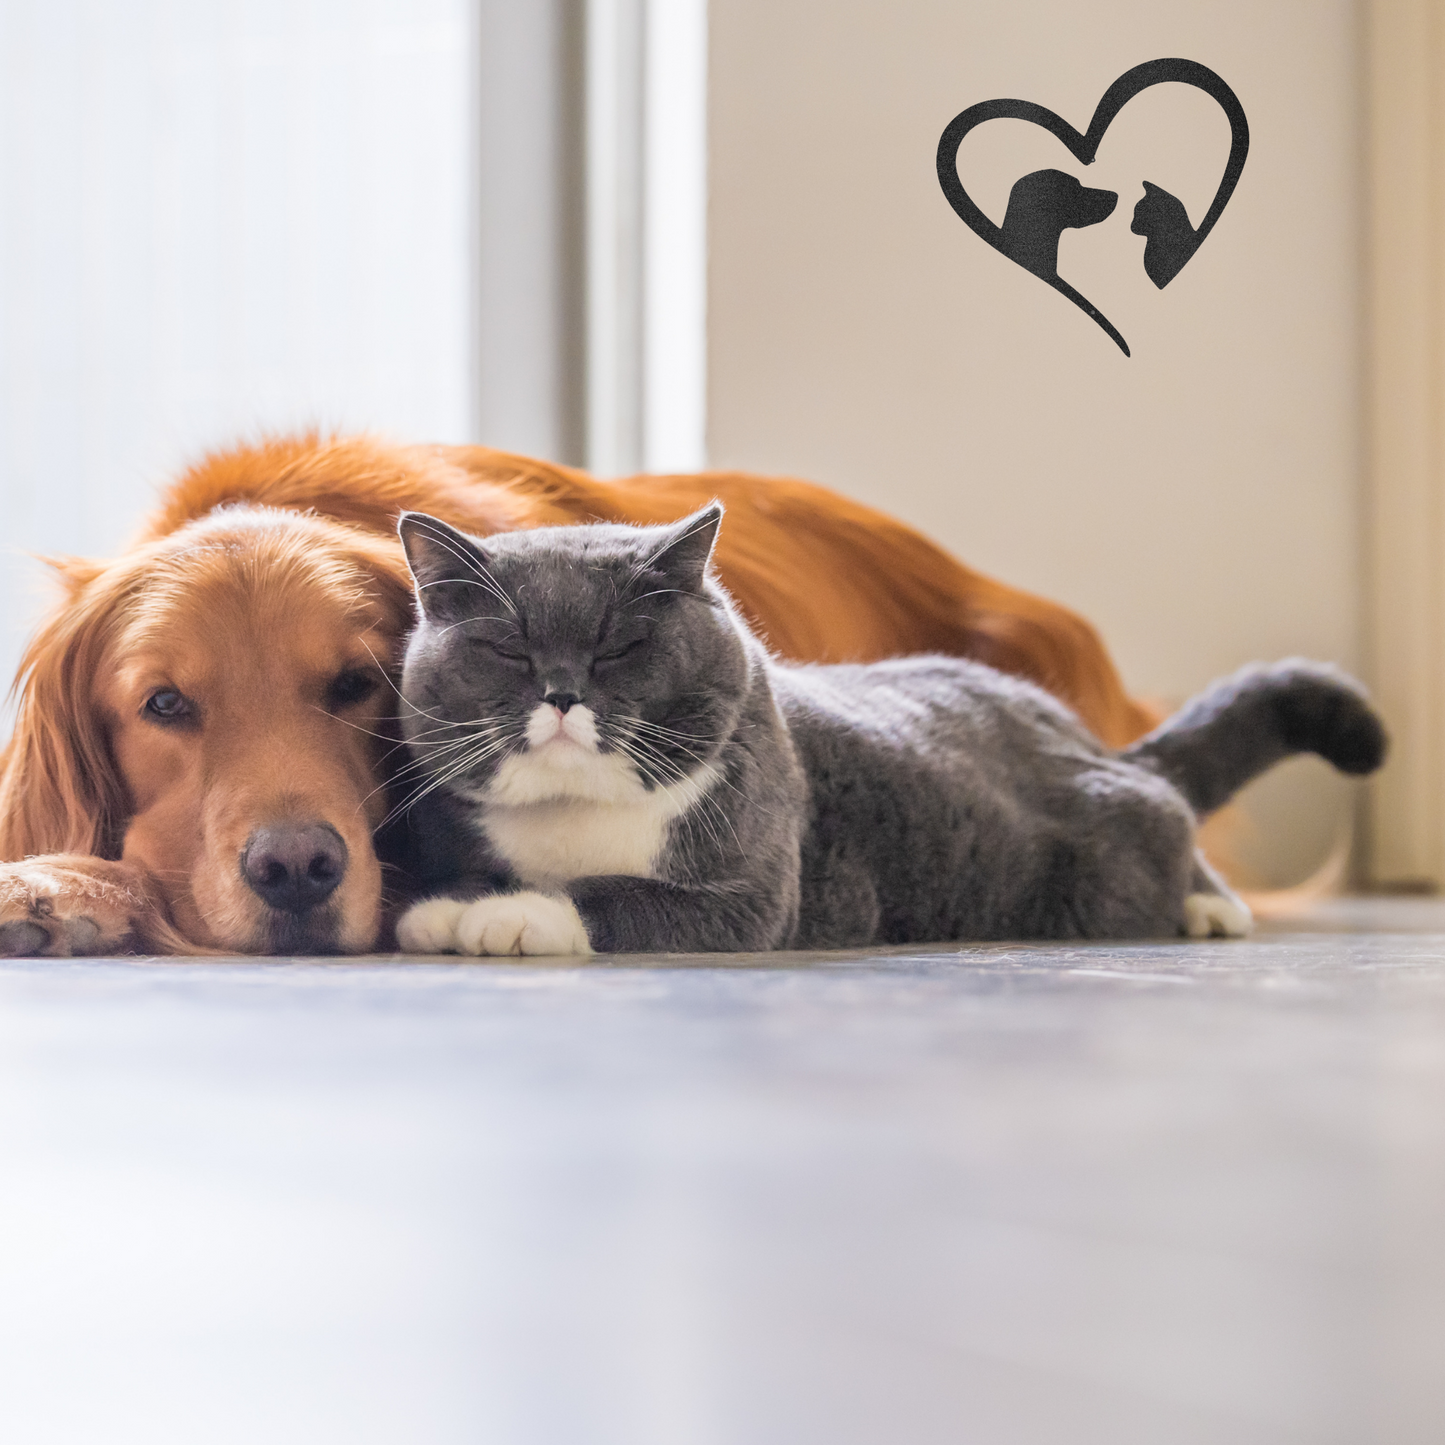 Cat and Dog Love - Custom Metal Sign - Gift for Vet, Dog Groomer